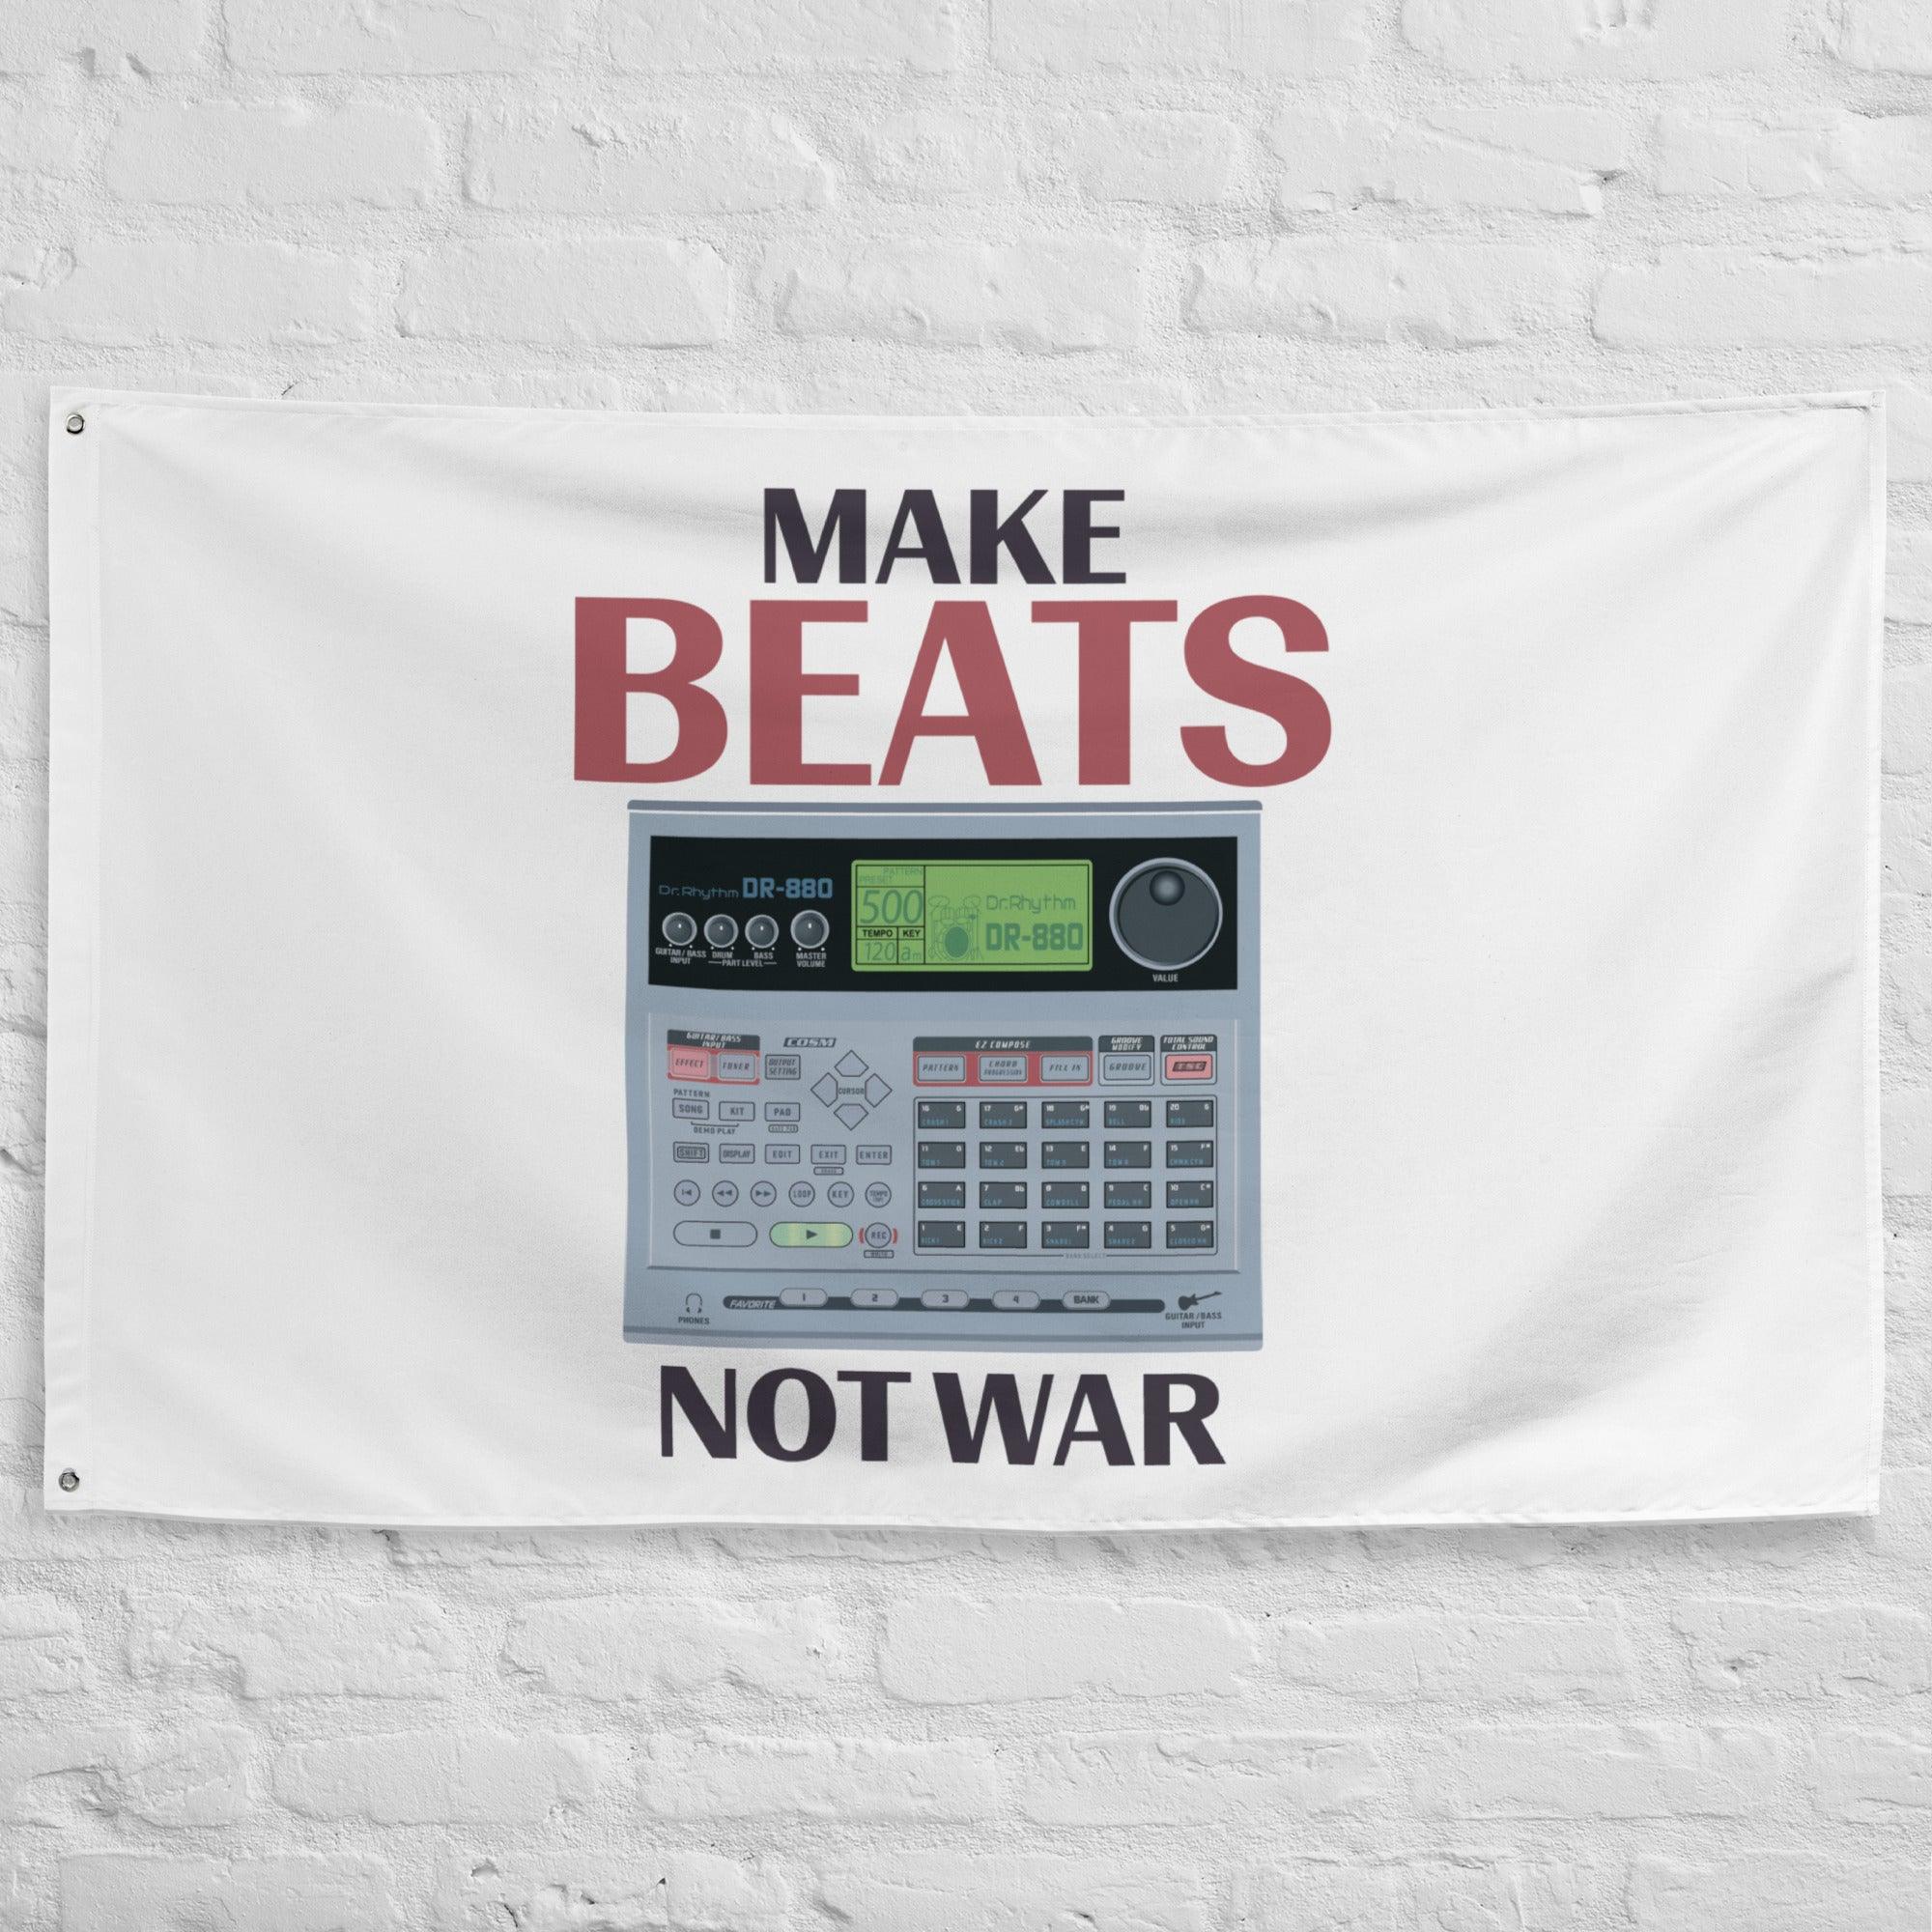 Boss Dr. Rhythm DR-880 Drum Machine Artist Rendition "Make Beats Not War Flag" (Horizontal) - Tedeschi Studio, LLC.